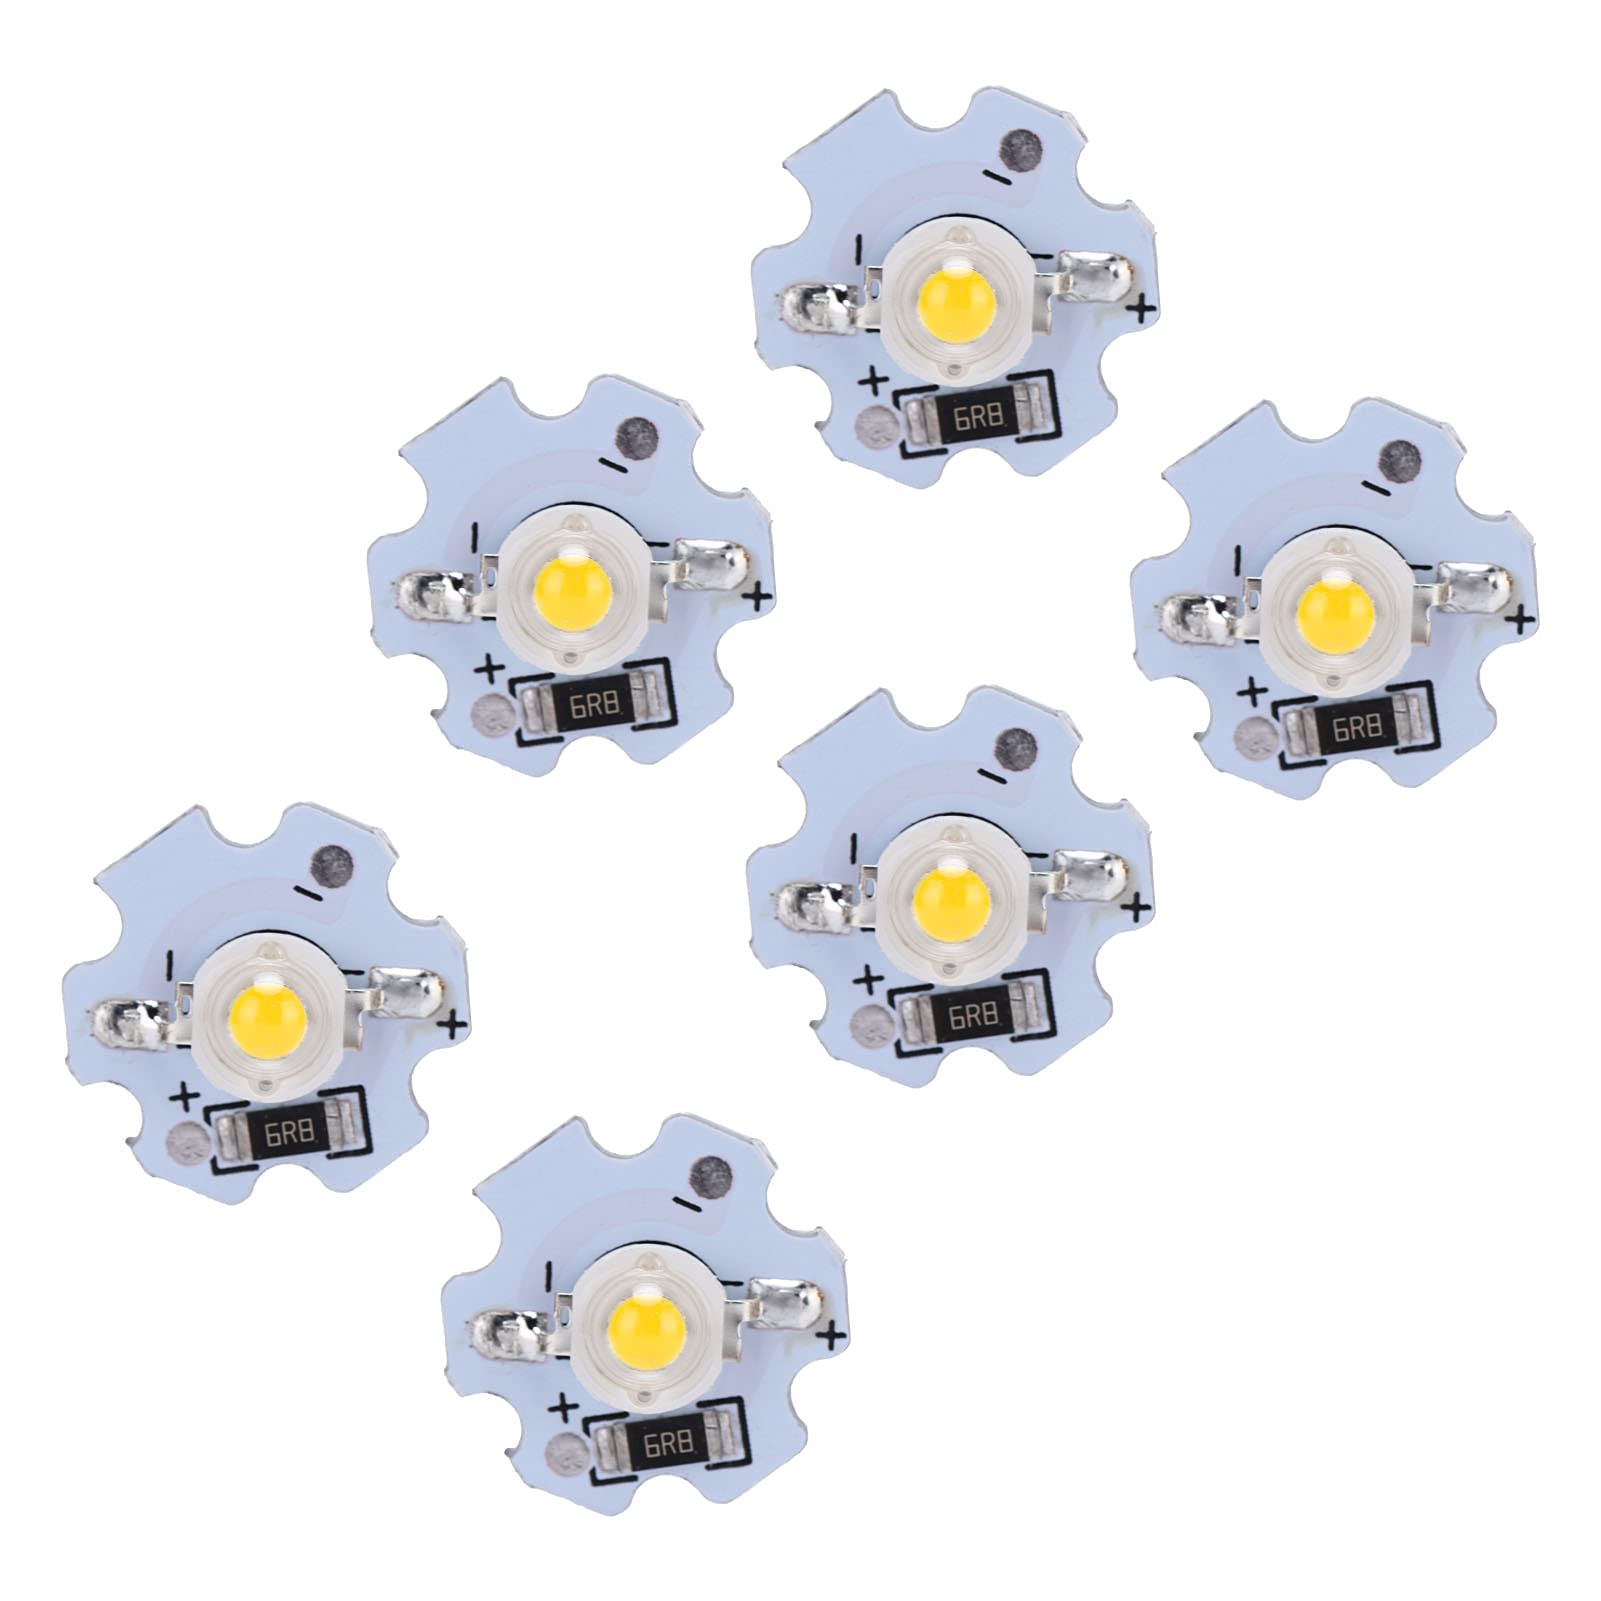 25個入り 5V LEDチップ LEDランプ ビーズ ランプビーズ LED電球 丸型 高輝度 省エネ DIY 照明器具 照明部品 (暖かい白)